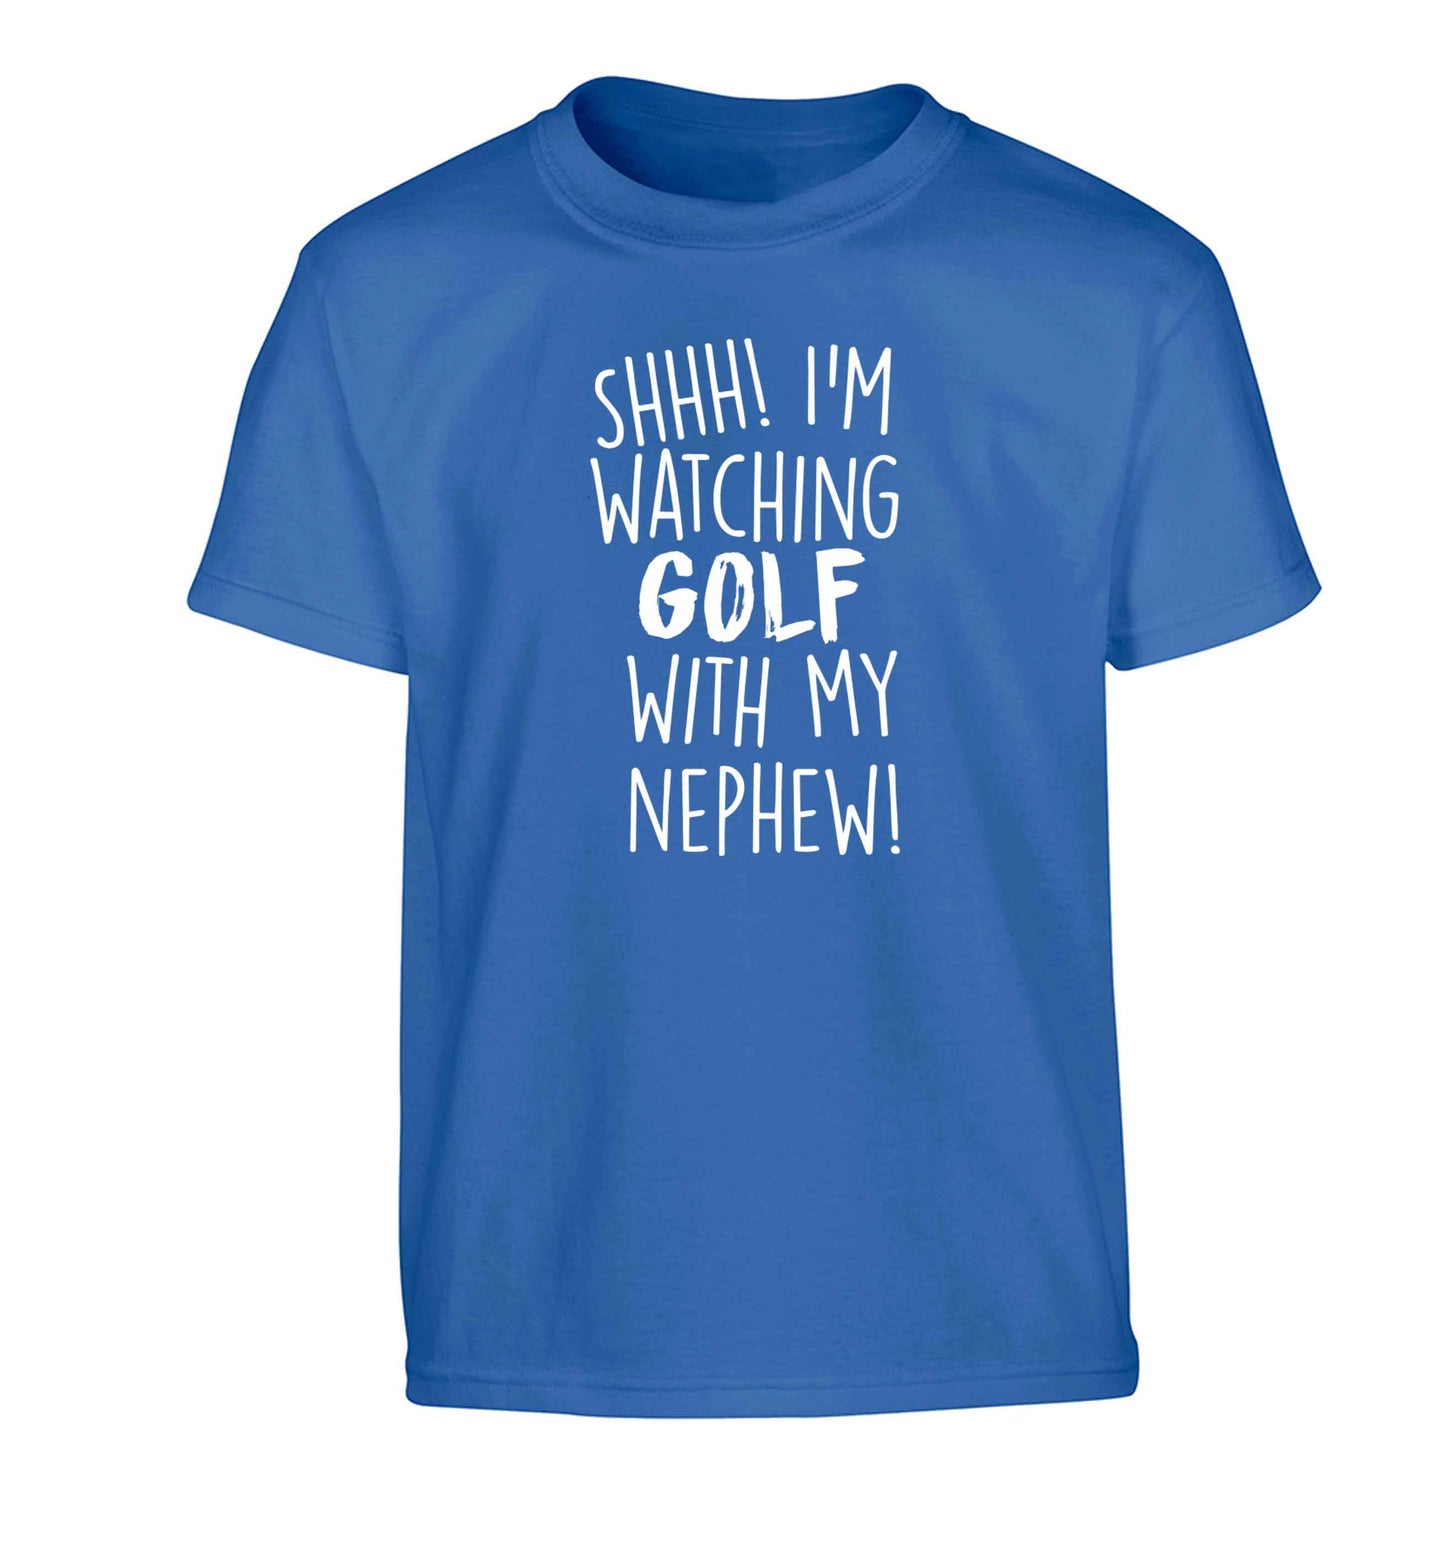 Shh I'm watching golf with my nephew Children's blue Tshirt 12-13 Years